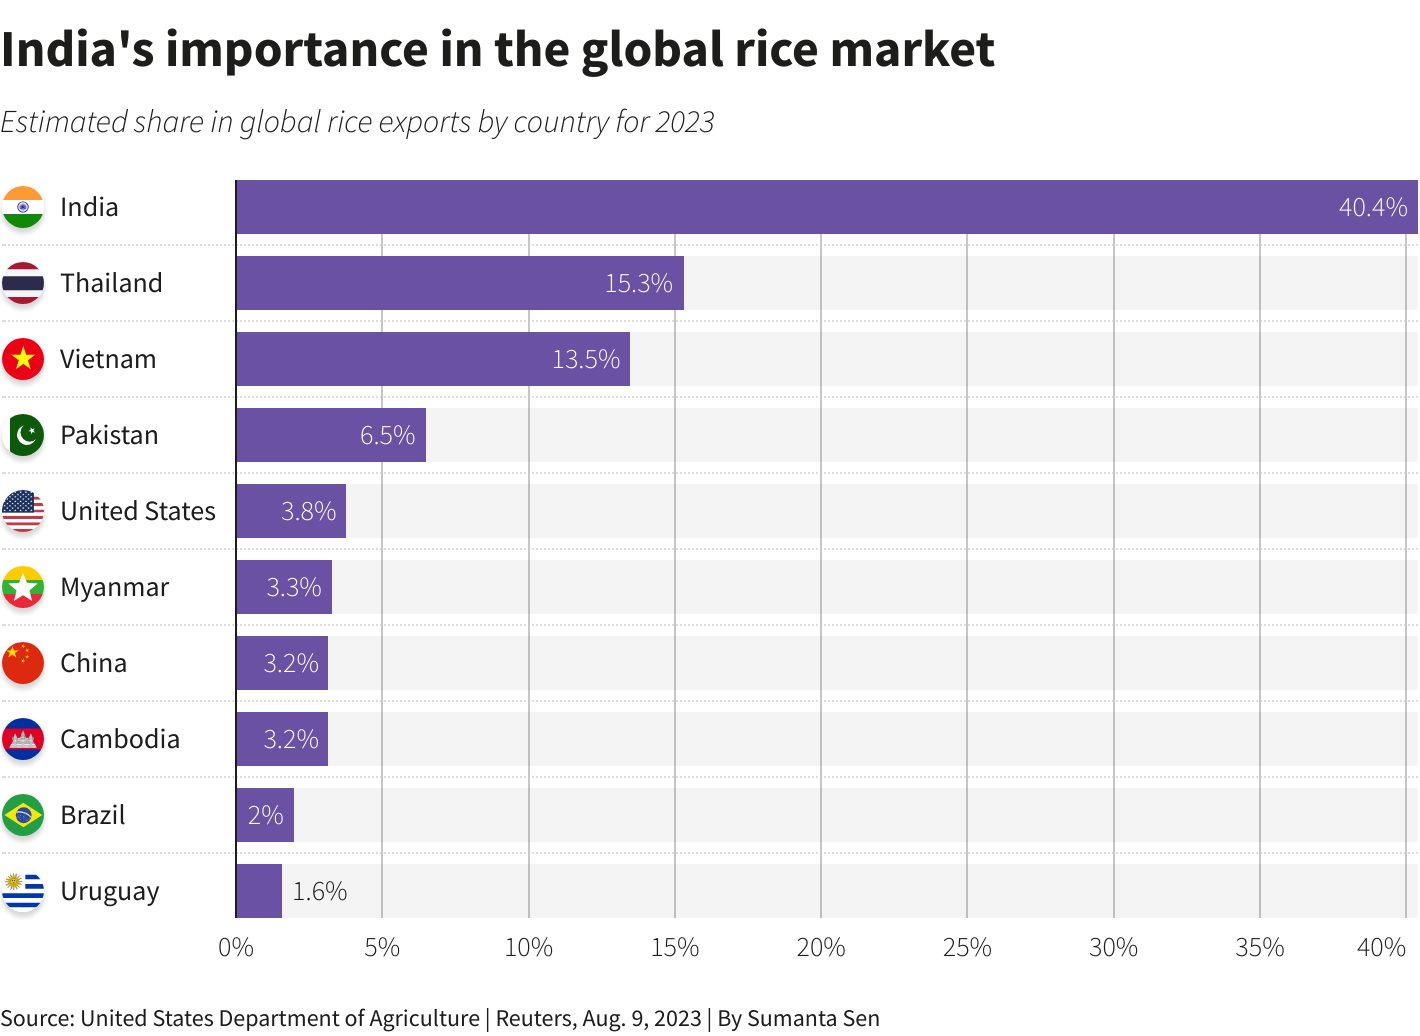 Ấn Độ cấm xuất khẩu gạo, Việt Nam, Thái Lan trước áp lực tăng xuất khẩu - ký ức 'hiệu ứng domino' 15 năm trước ùa về khiến thế giới đứng ngồi không yên - Ảnh 2.